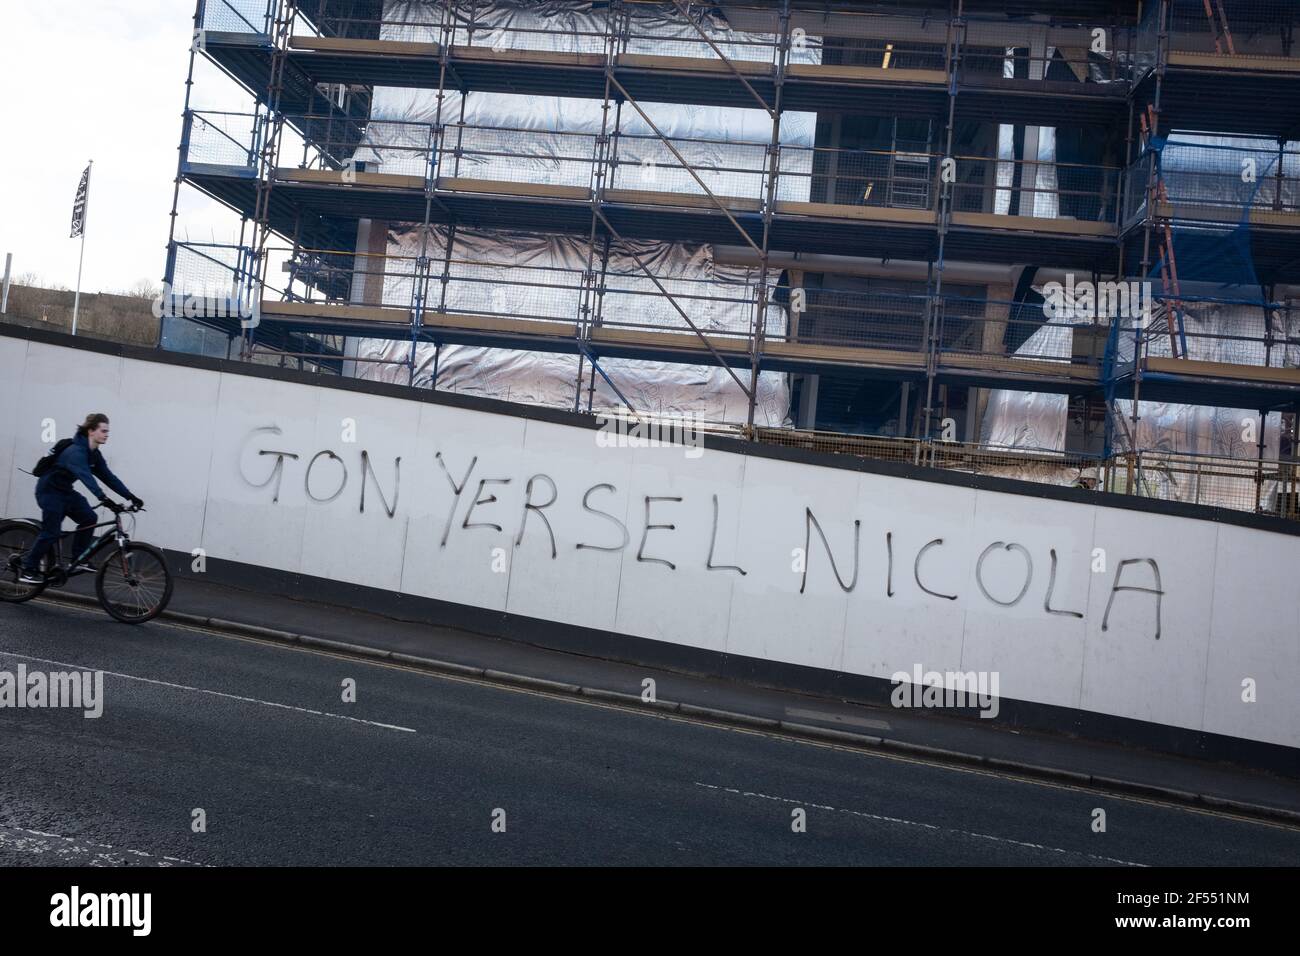 Glasgow, Regno Unito, il 24 marzo 2021. ÔGon yersel NicolaÕ graffiti appare a sostegno del primo ministro Nicola Sturgeon, su un muro di cantiere, mentre i partiti politici scozzesi iniziano la loro campagna elettorale per le elezioni del 6 maggio al Parlamento scozzese. Photo credit: Jeremy Sutton-Hibbert/Alamy Live News. Foto Stock